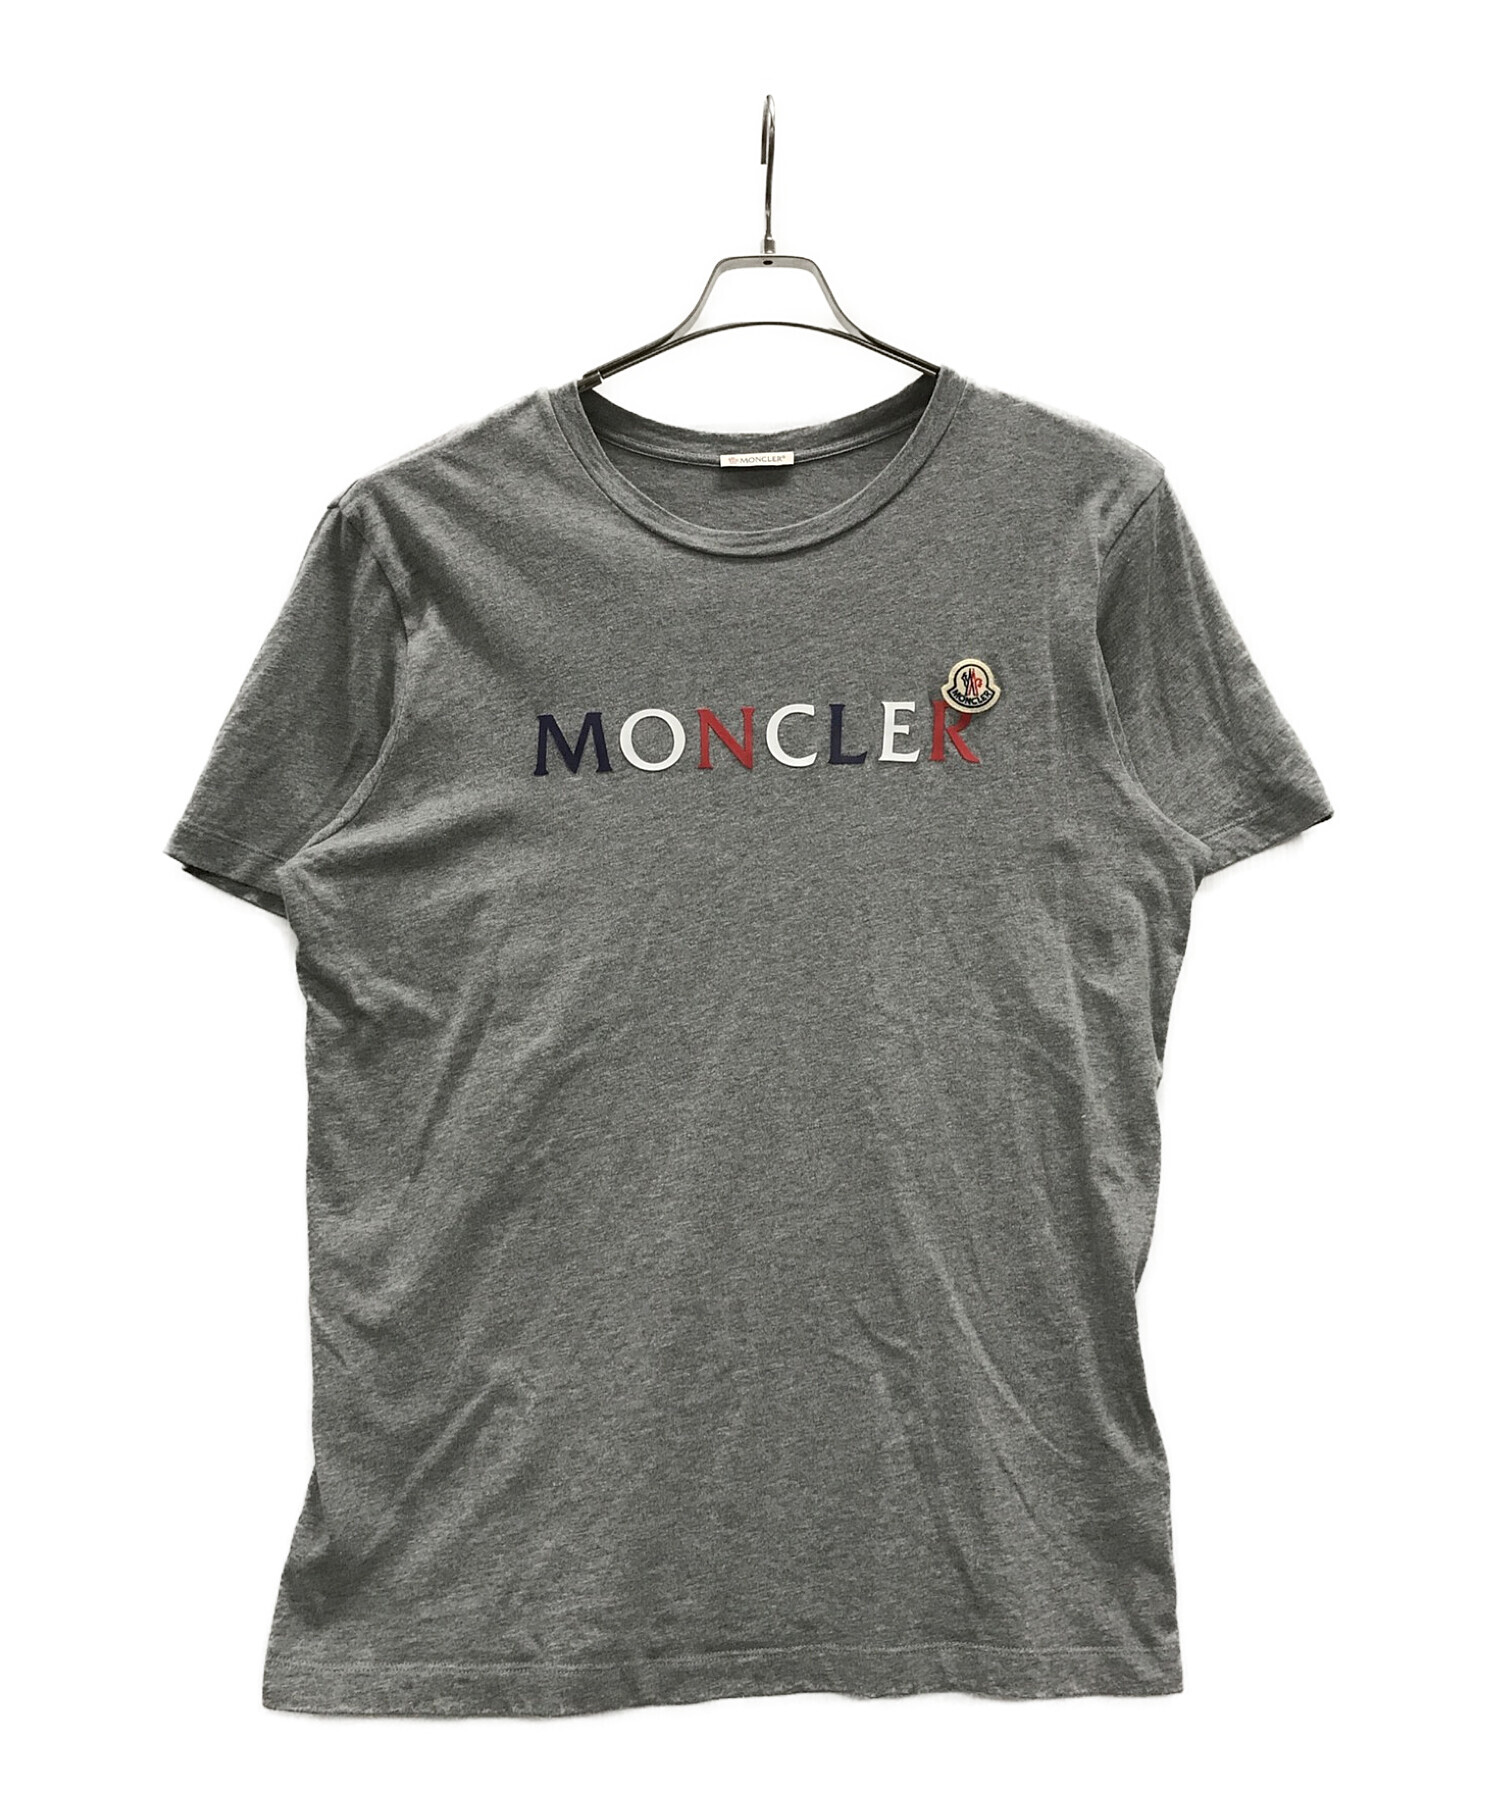 MONCLER (モンクレール) シャツ ライトグレー サイズ:L